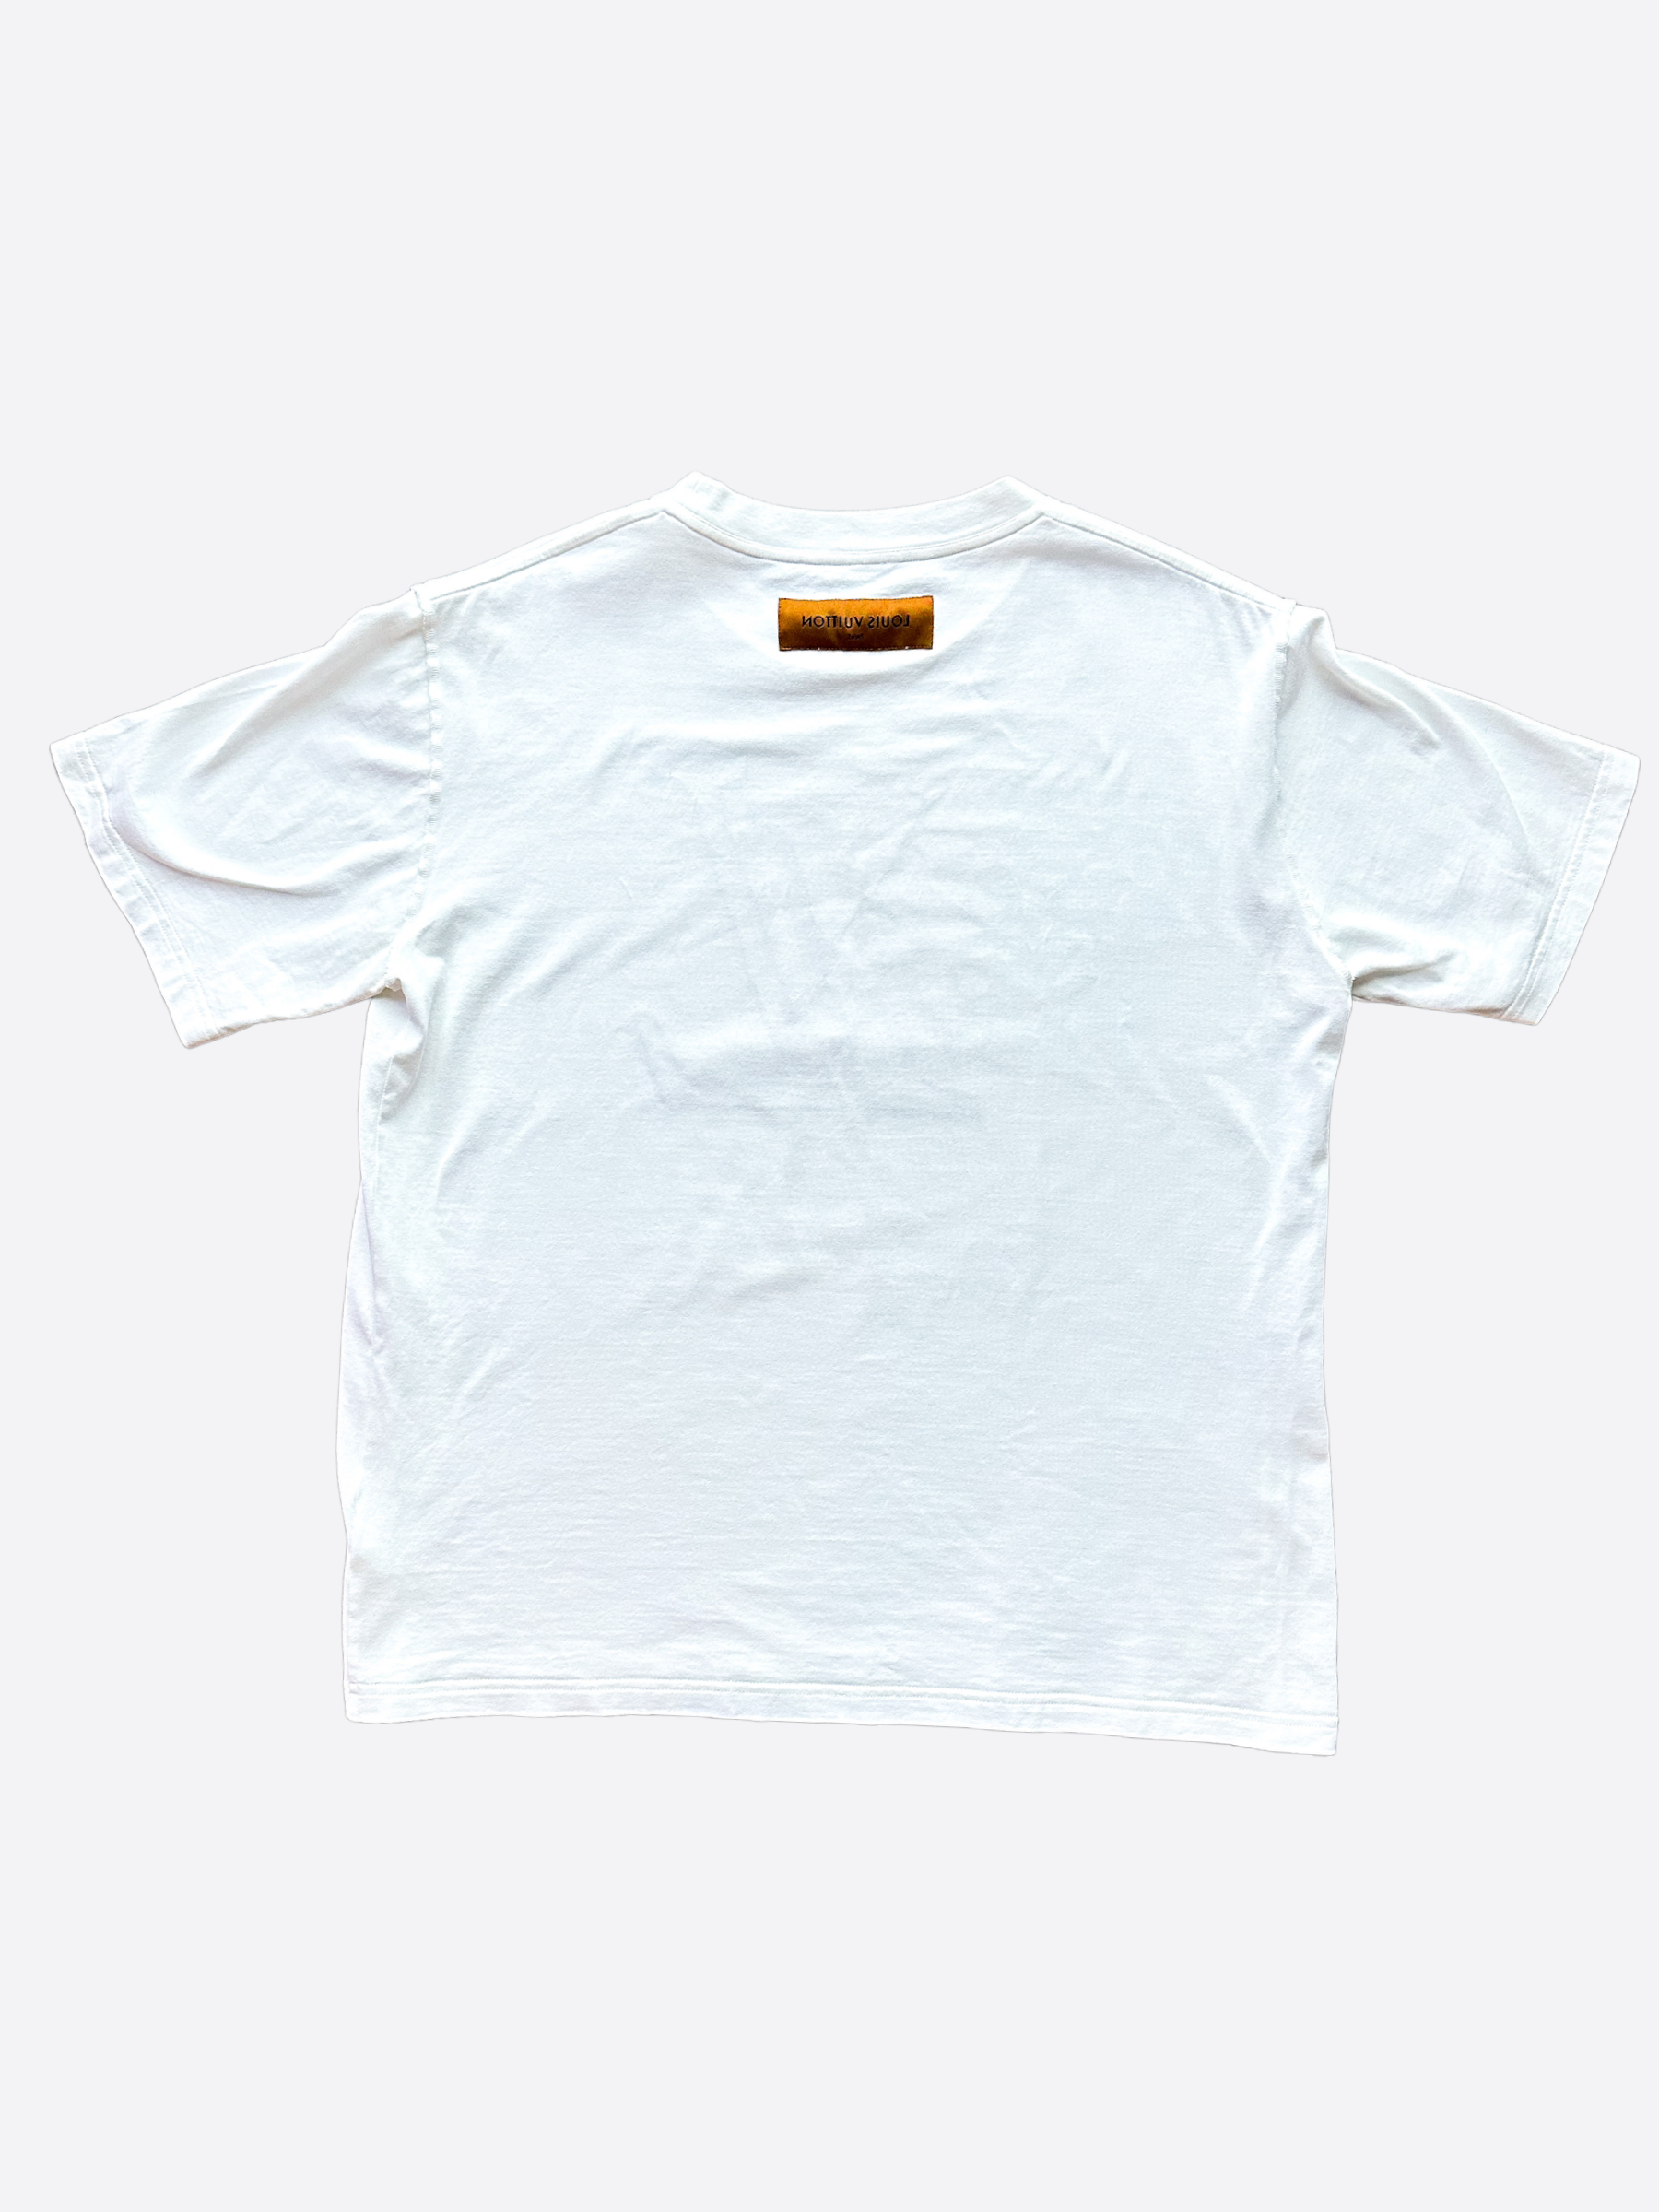 white lv shirt